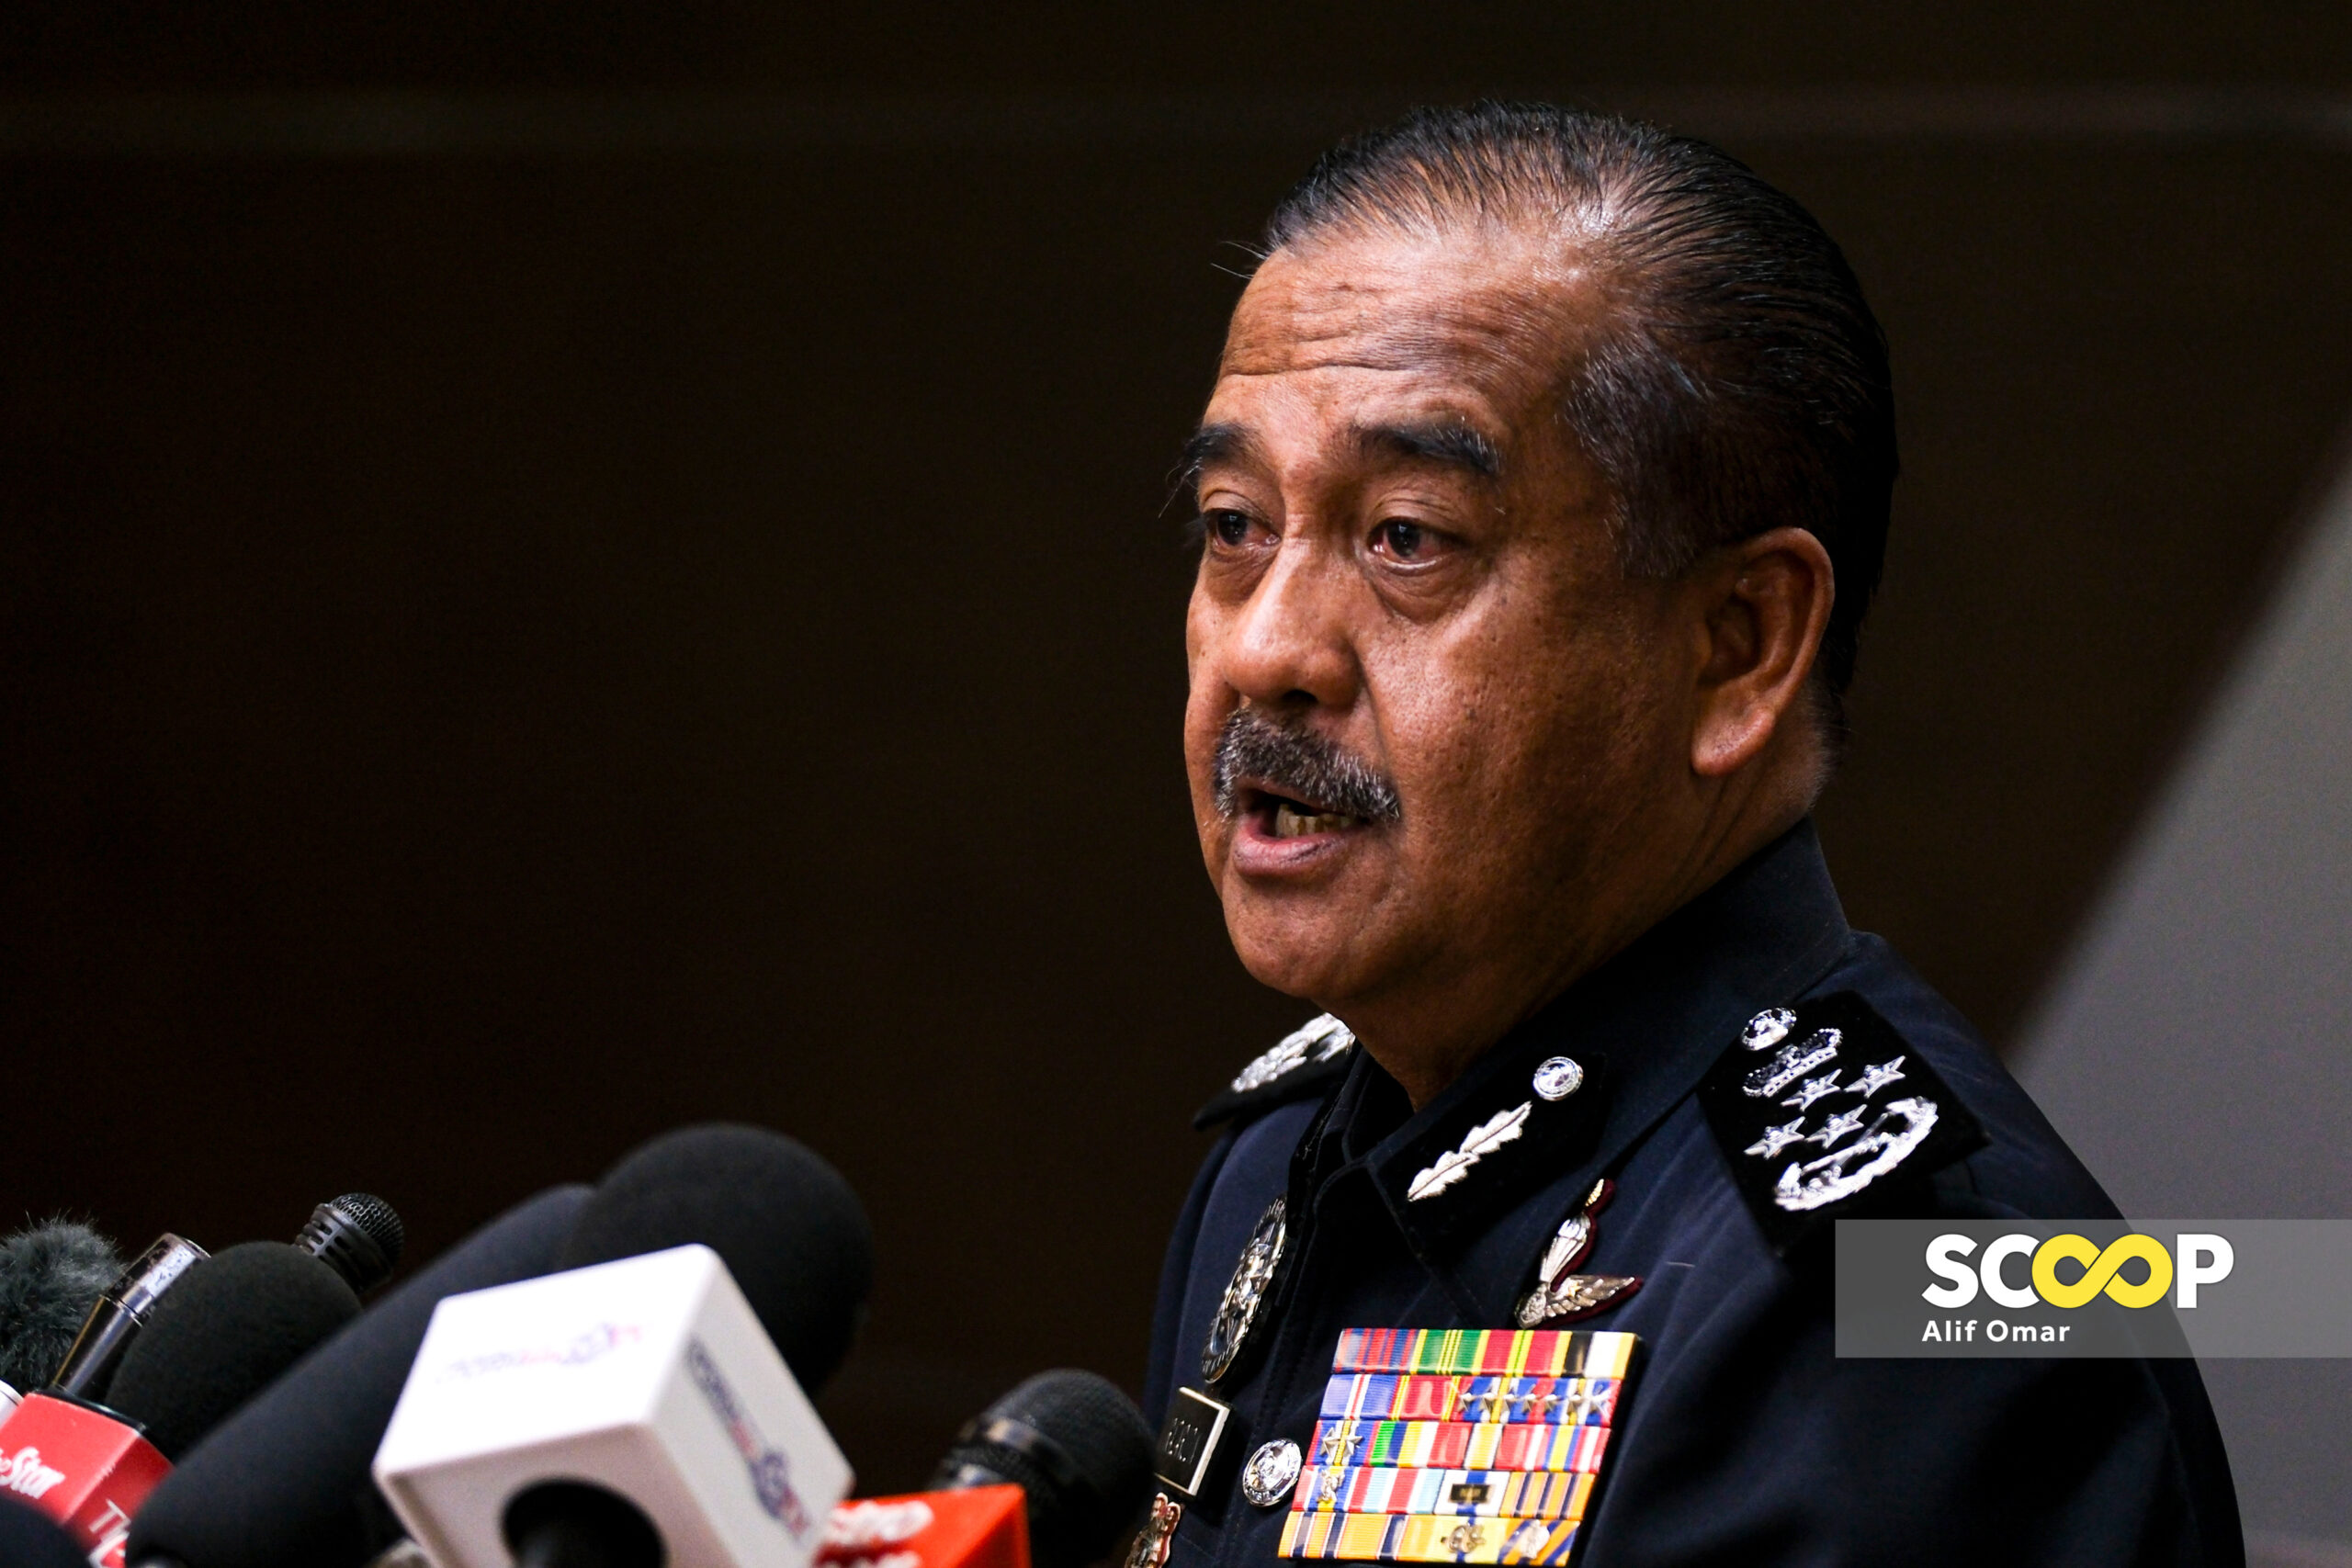 Polis terima dua laporan terhadap Akmal, siasatan sudah dijalankan: Ketua Polis Negara